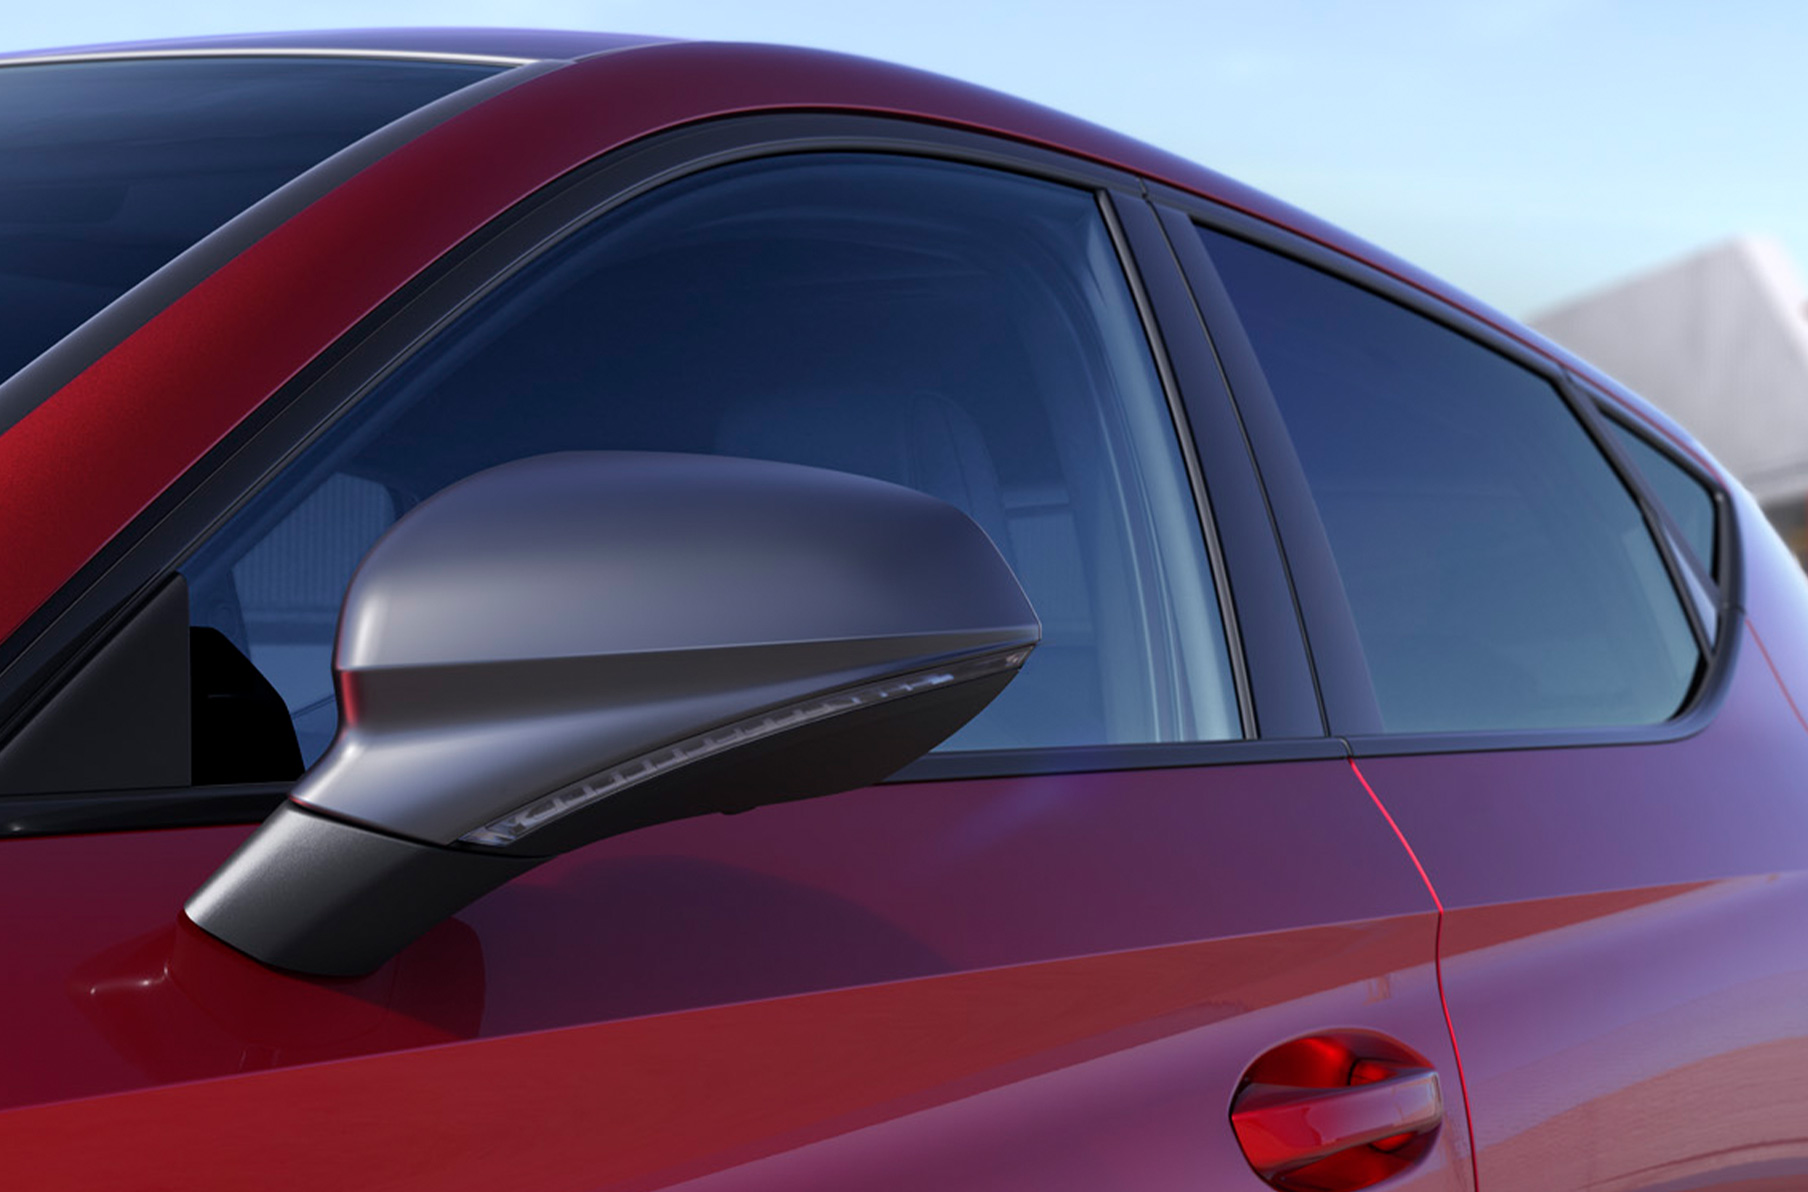 SEAT León color rojo Desire con fundas de los retrovisores de fibra de carbono